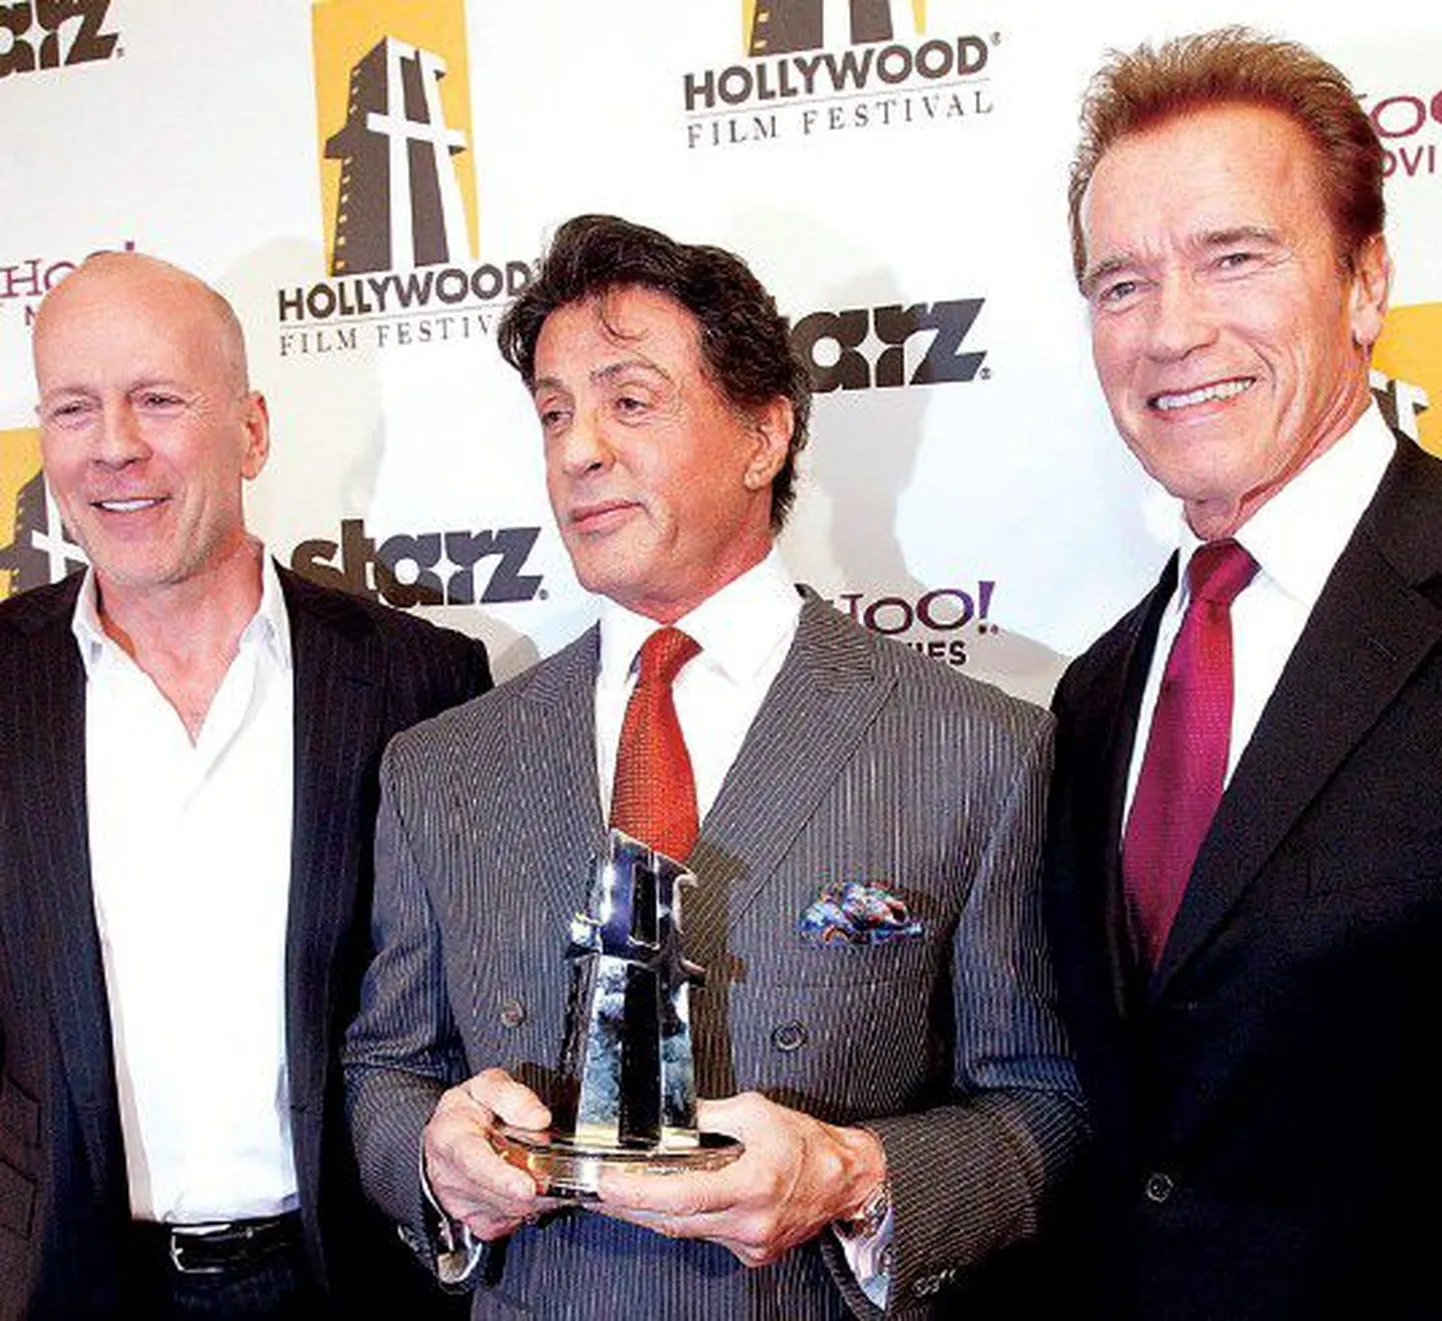 Голливудский фестиваль кино собрал множество звезд 25 октября в Лос-Анджелесе, в том числе нестраеющих звезд боевиков Брюсса Уиллиса (слева направо), Сильвестра Сталлоне и губернатора Калифорнии Арнольда Шварценеггера.